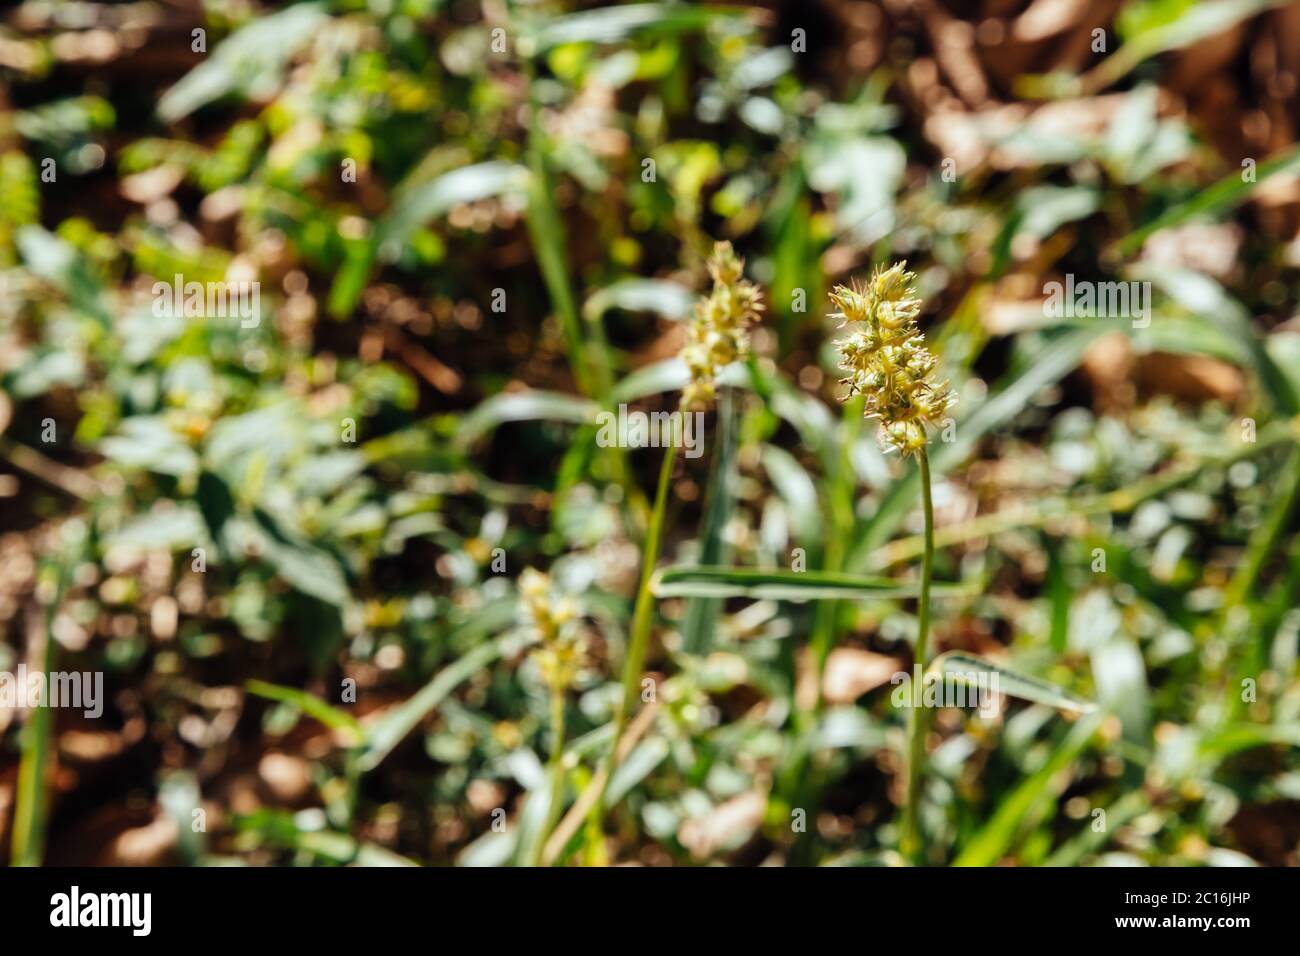 Southern sandbur (Cenchrus echinatus), aka spiny sandbur, southern sandspur and bur grass grows in a backyard, Asuncion, Paraguay Stock Photo